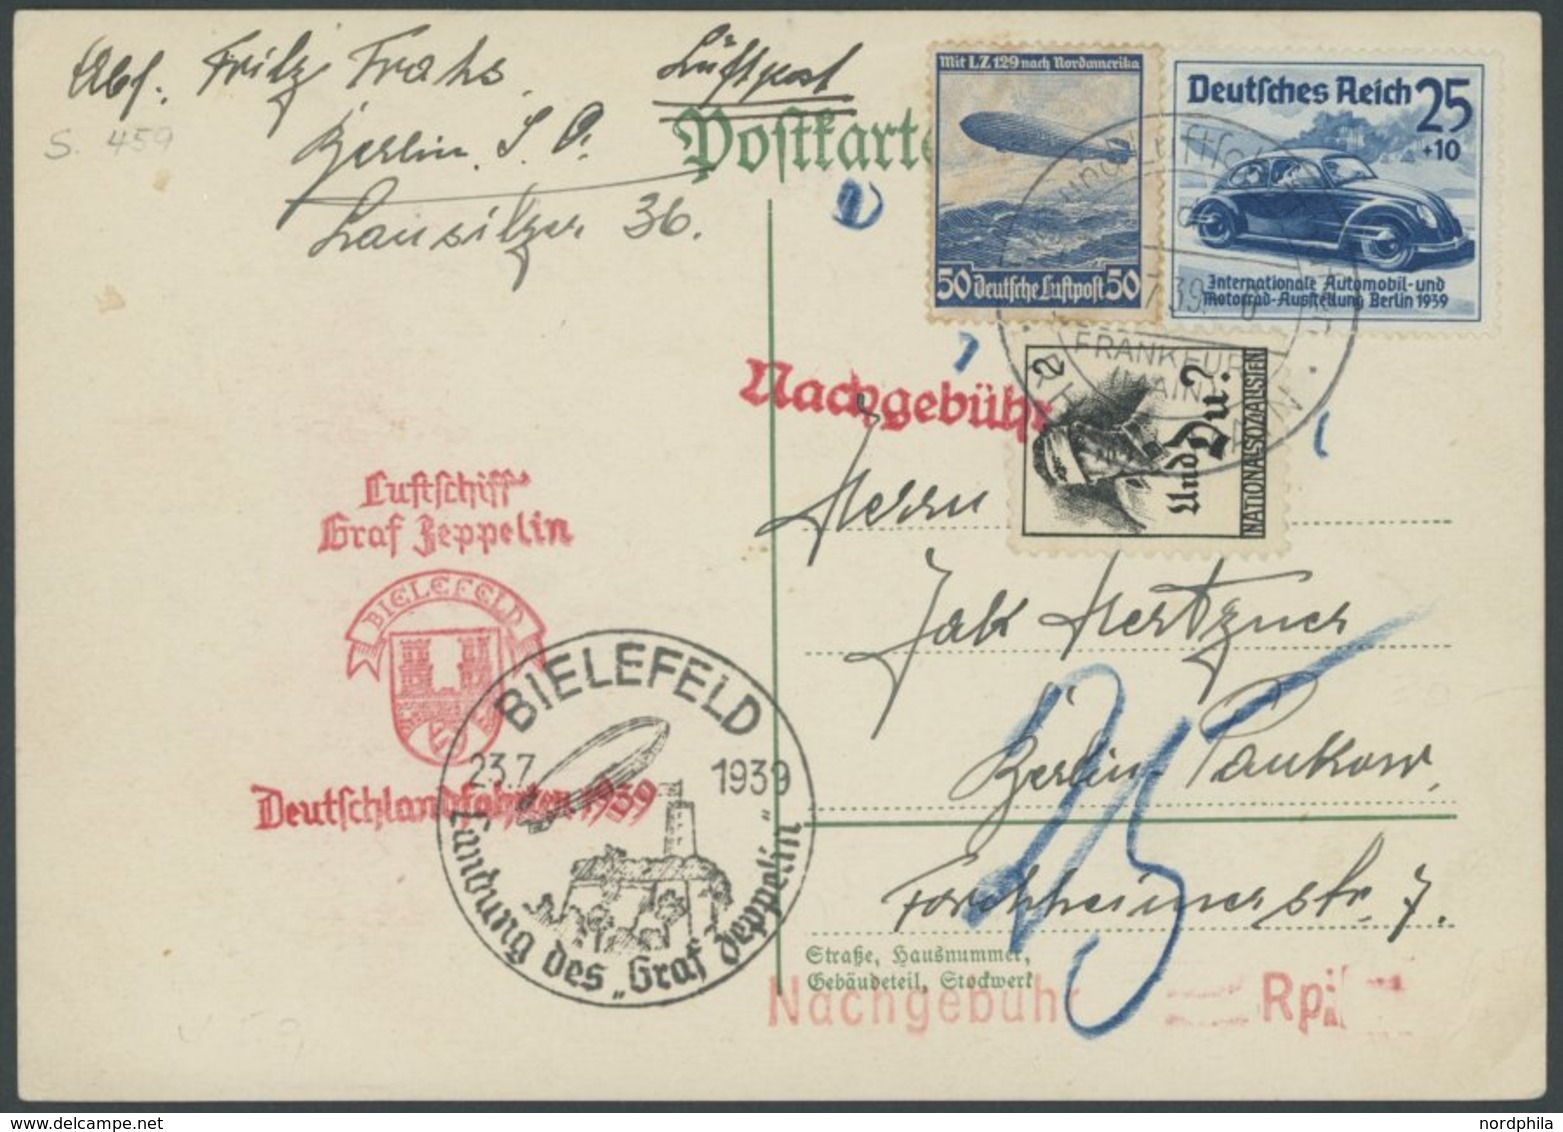 ZEPPELINPOST 459 BRIEF, 1939, Fahrt Nach Bielefeld, Prachtkarte Mit Nationalspenden-Vignette Und Nachgebühr - Airmail & Zeppelin